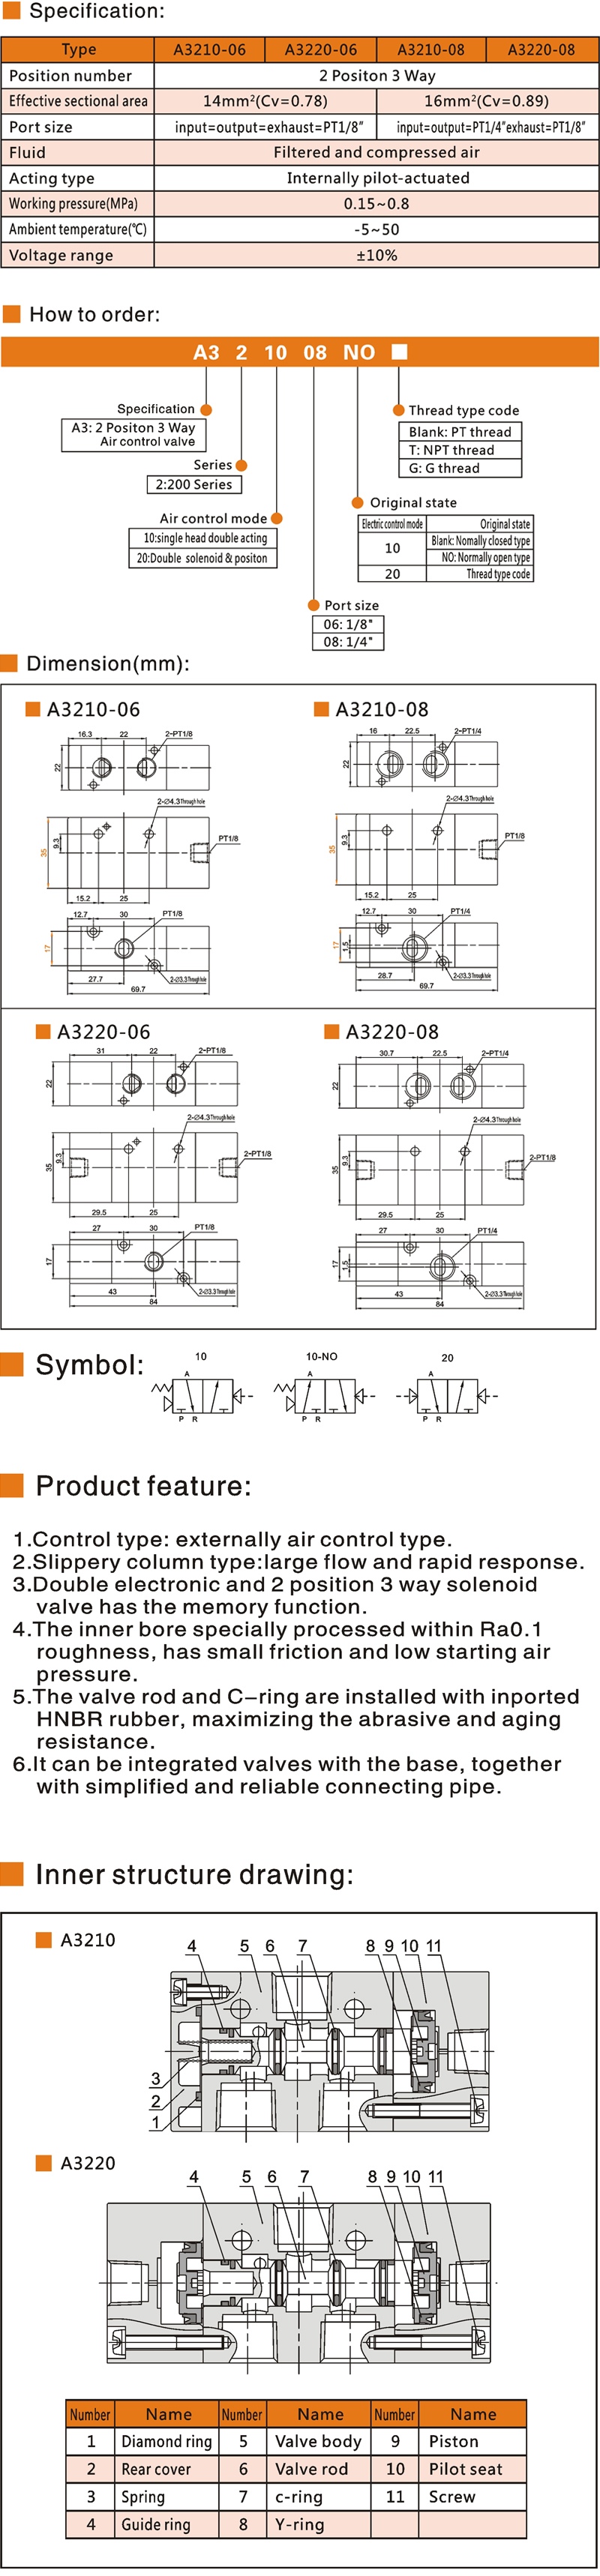 20 A3200 Air control valve.jpg